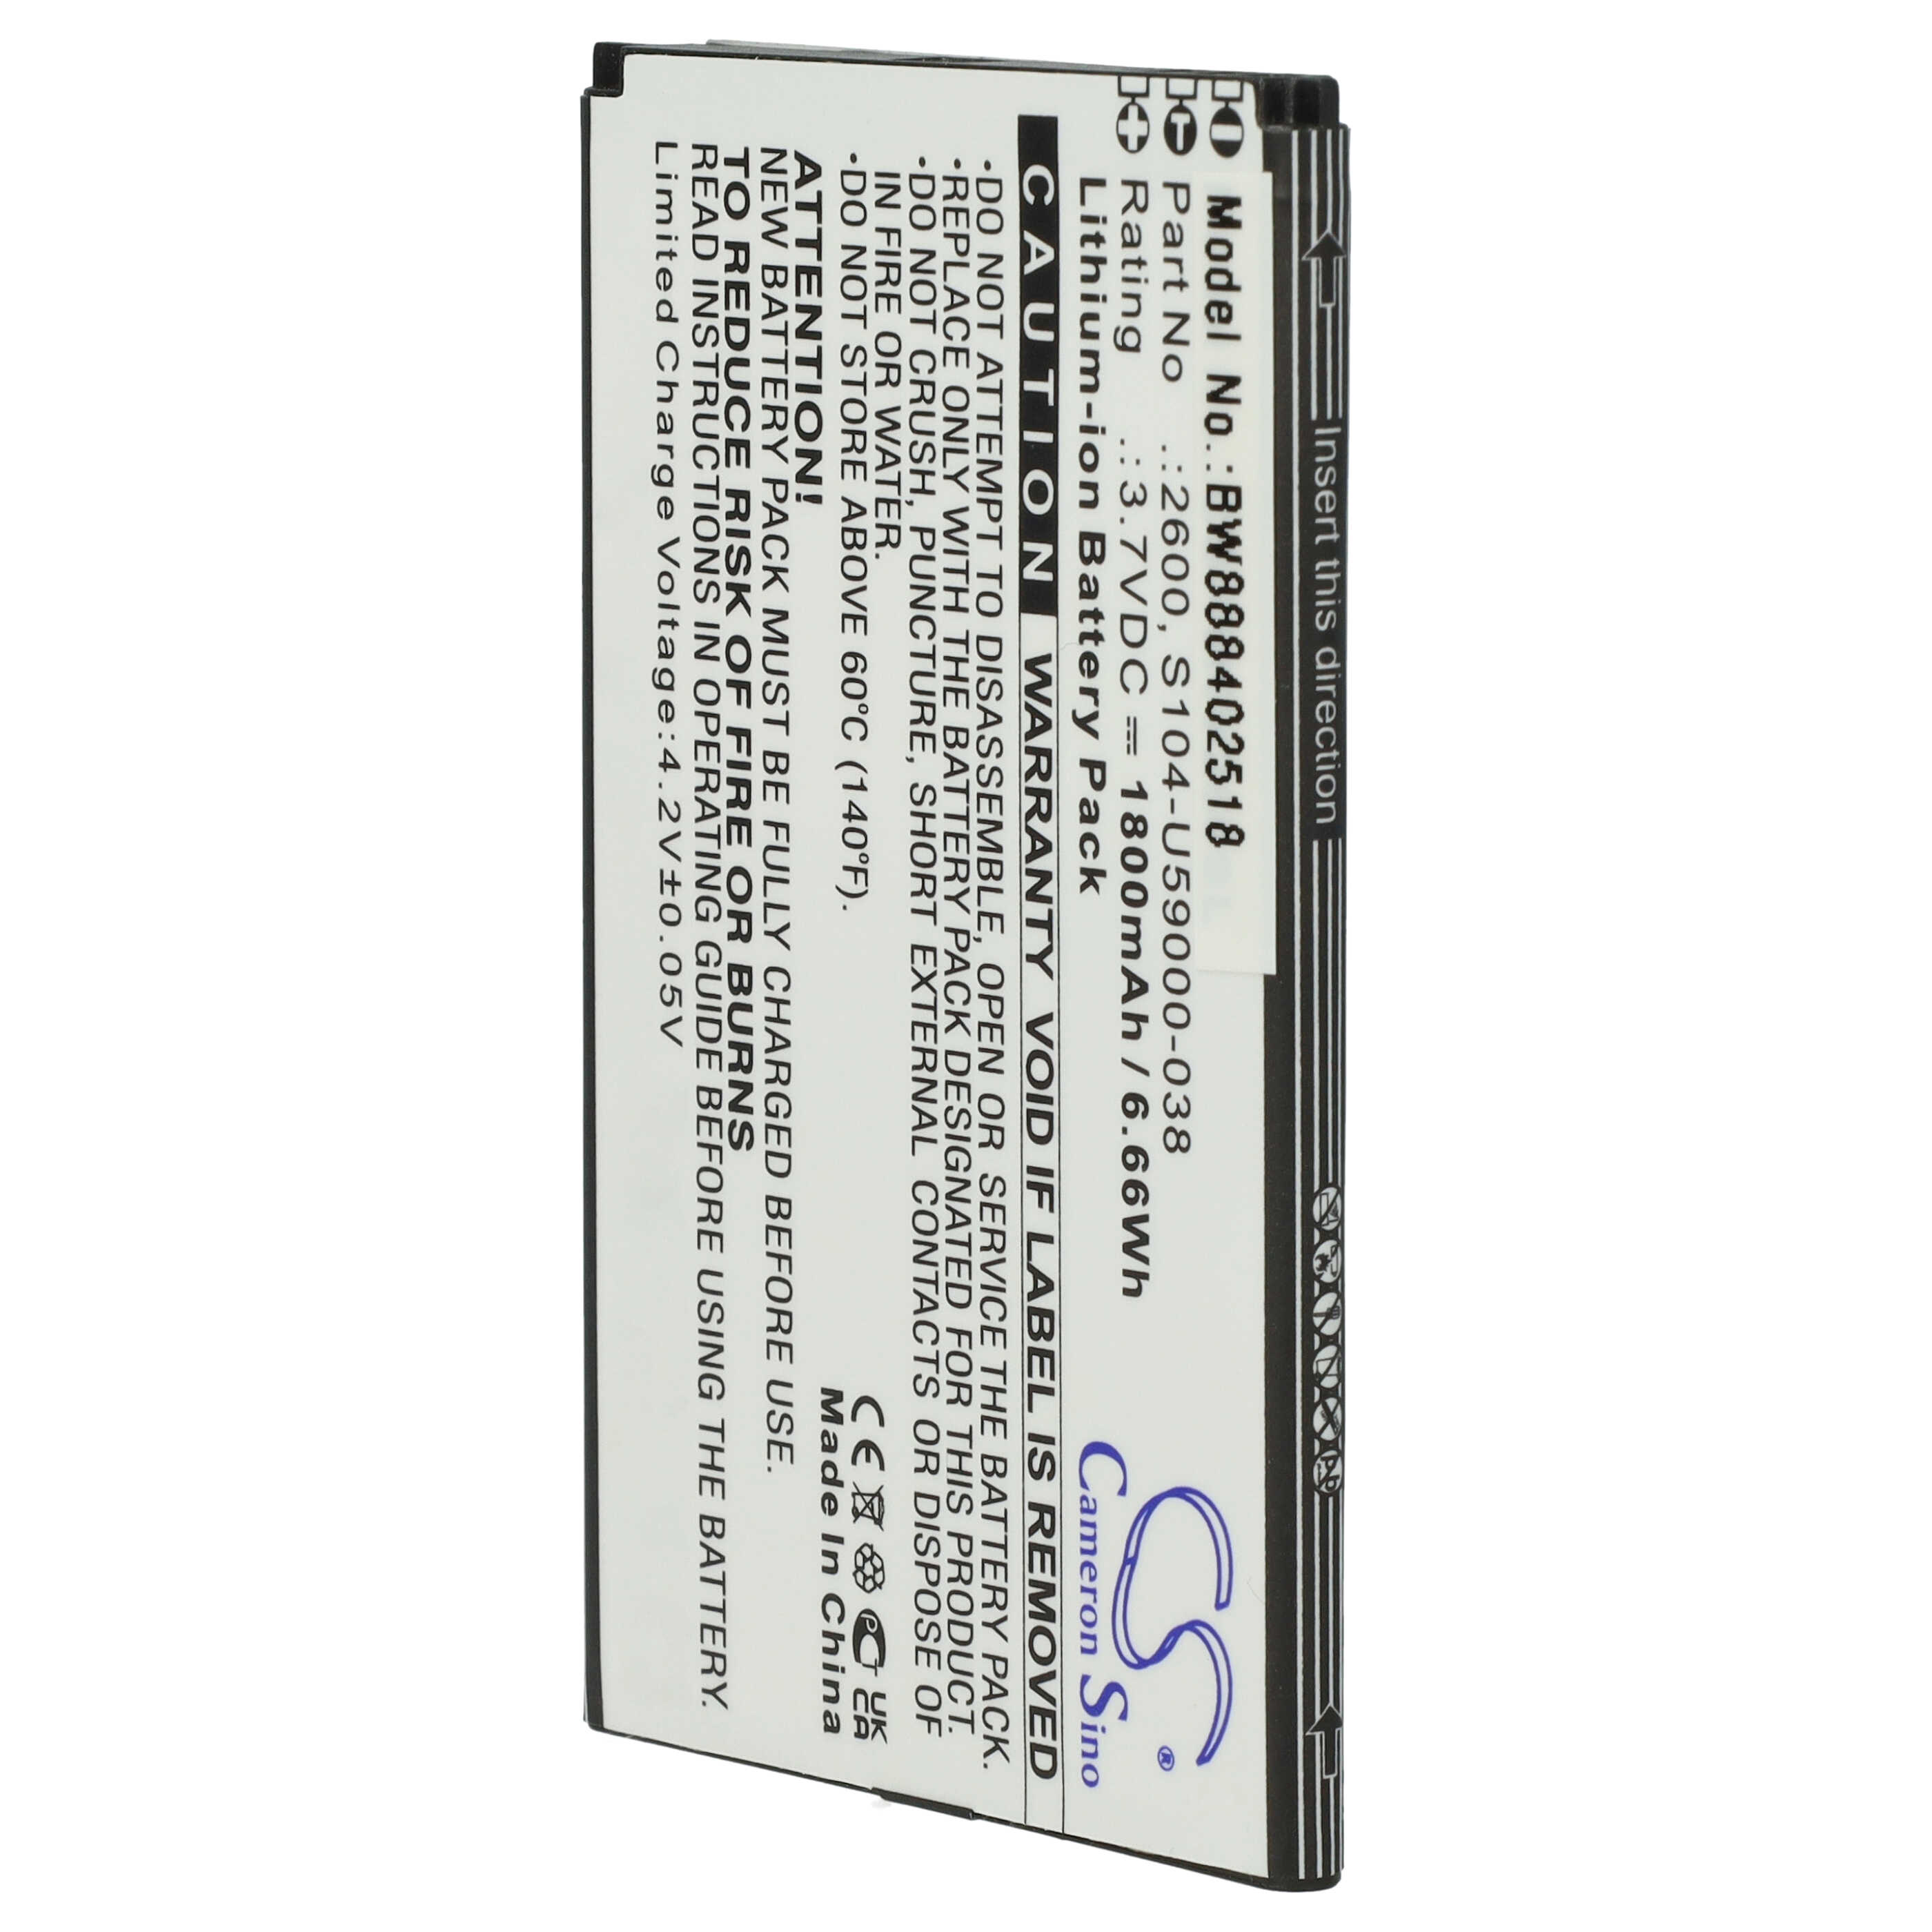 Batteria sostituisce Wiko 2600, S104-U59000-038 per cellulare Wiko - 1800mAh 3,7V Li-Ion